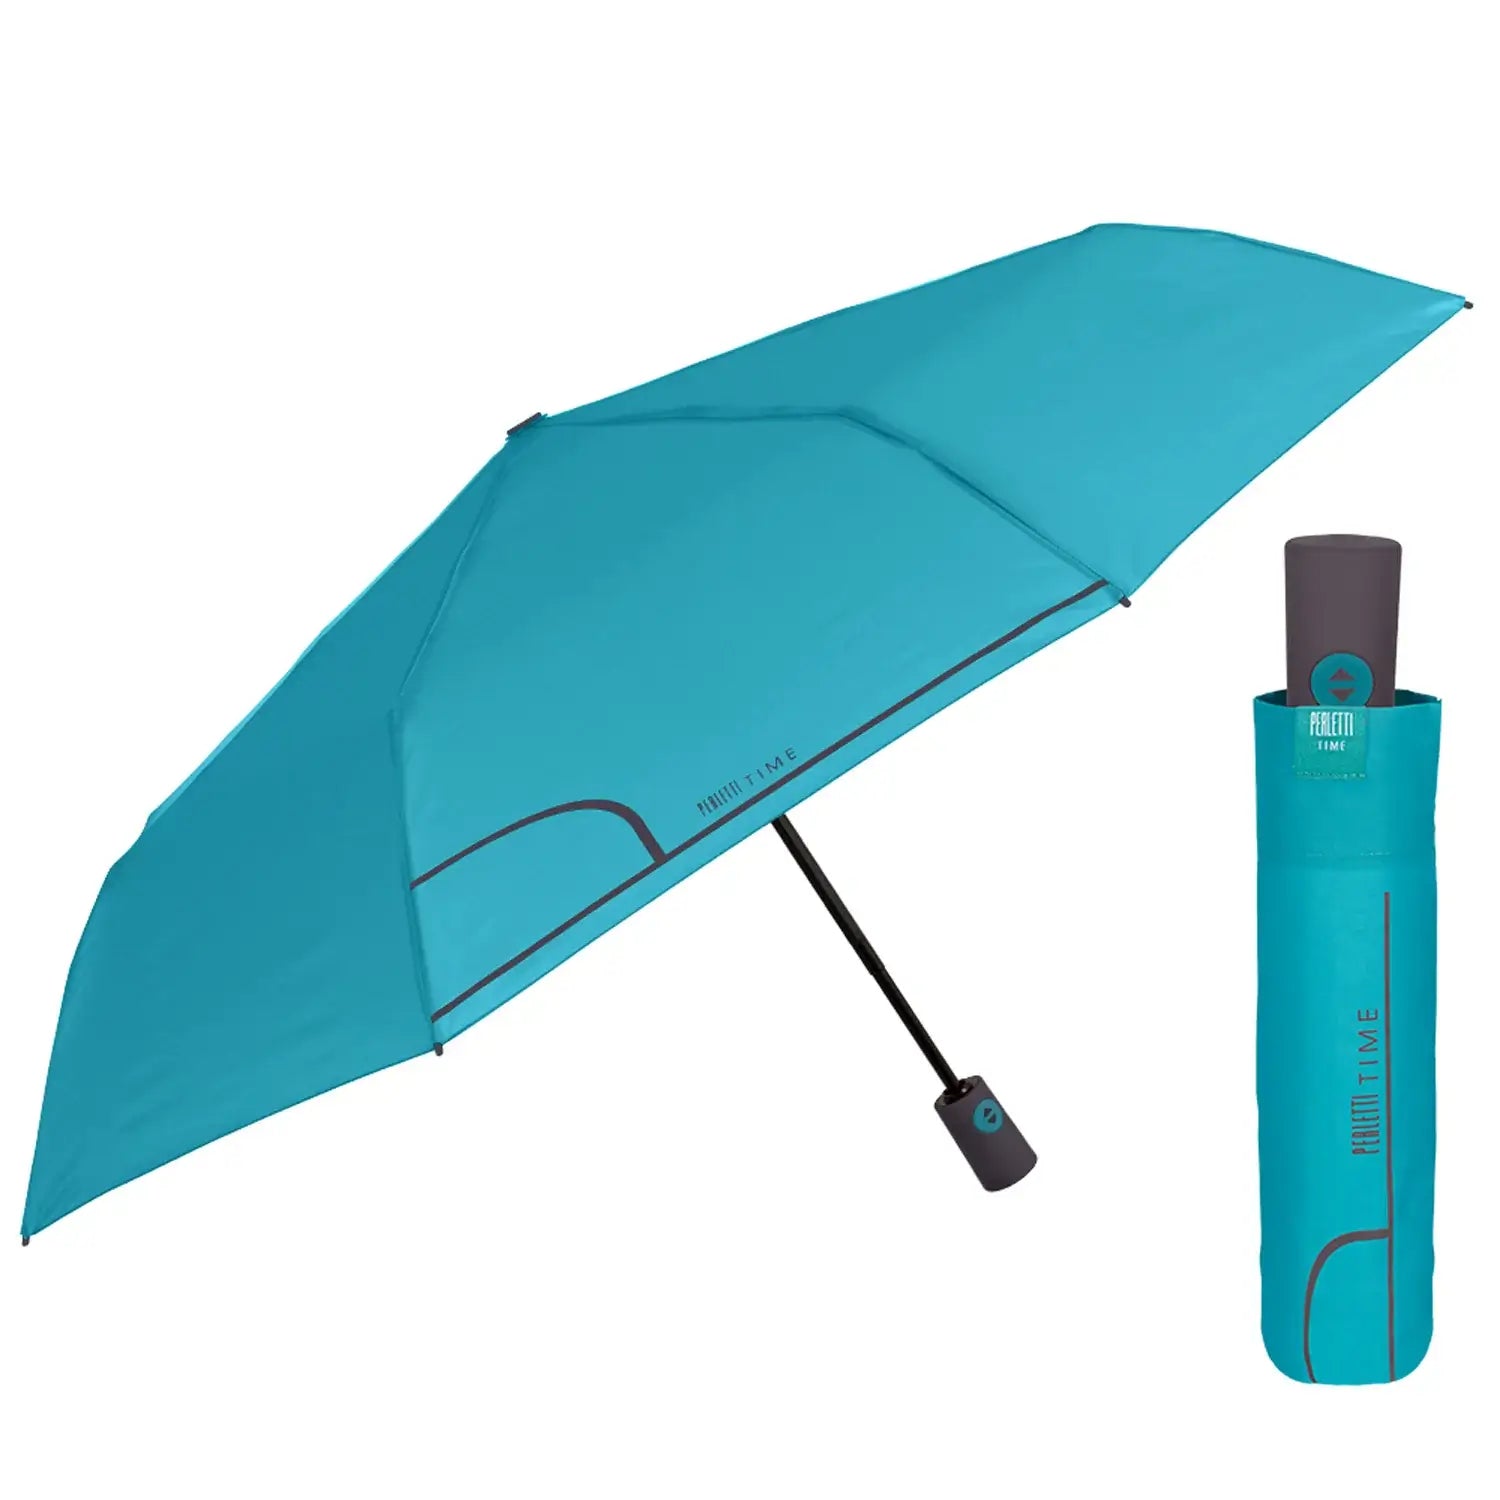 vouwparaplu tiener compact opent automatisch zijaanzicht paraplu met hoes open en dichtgevouwen